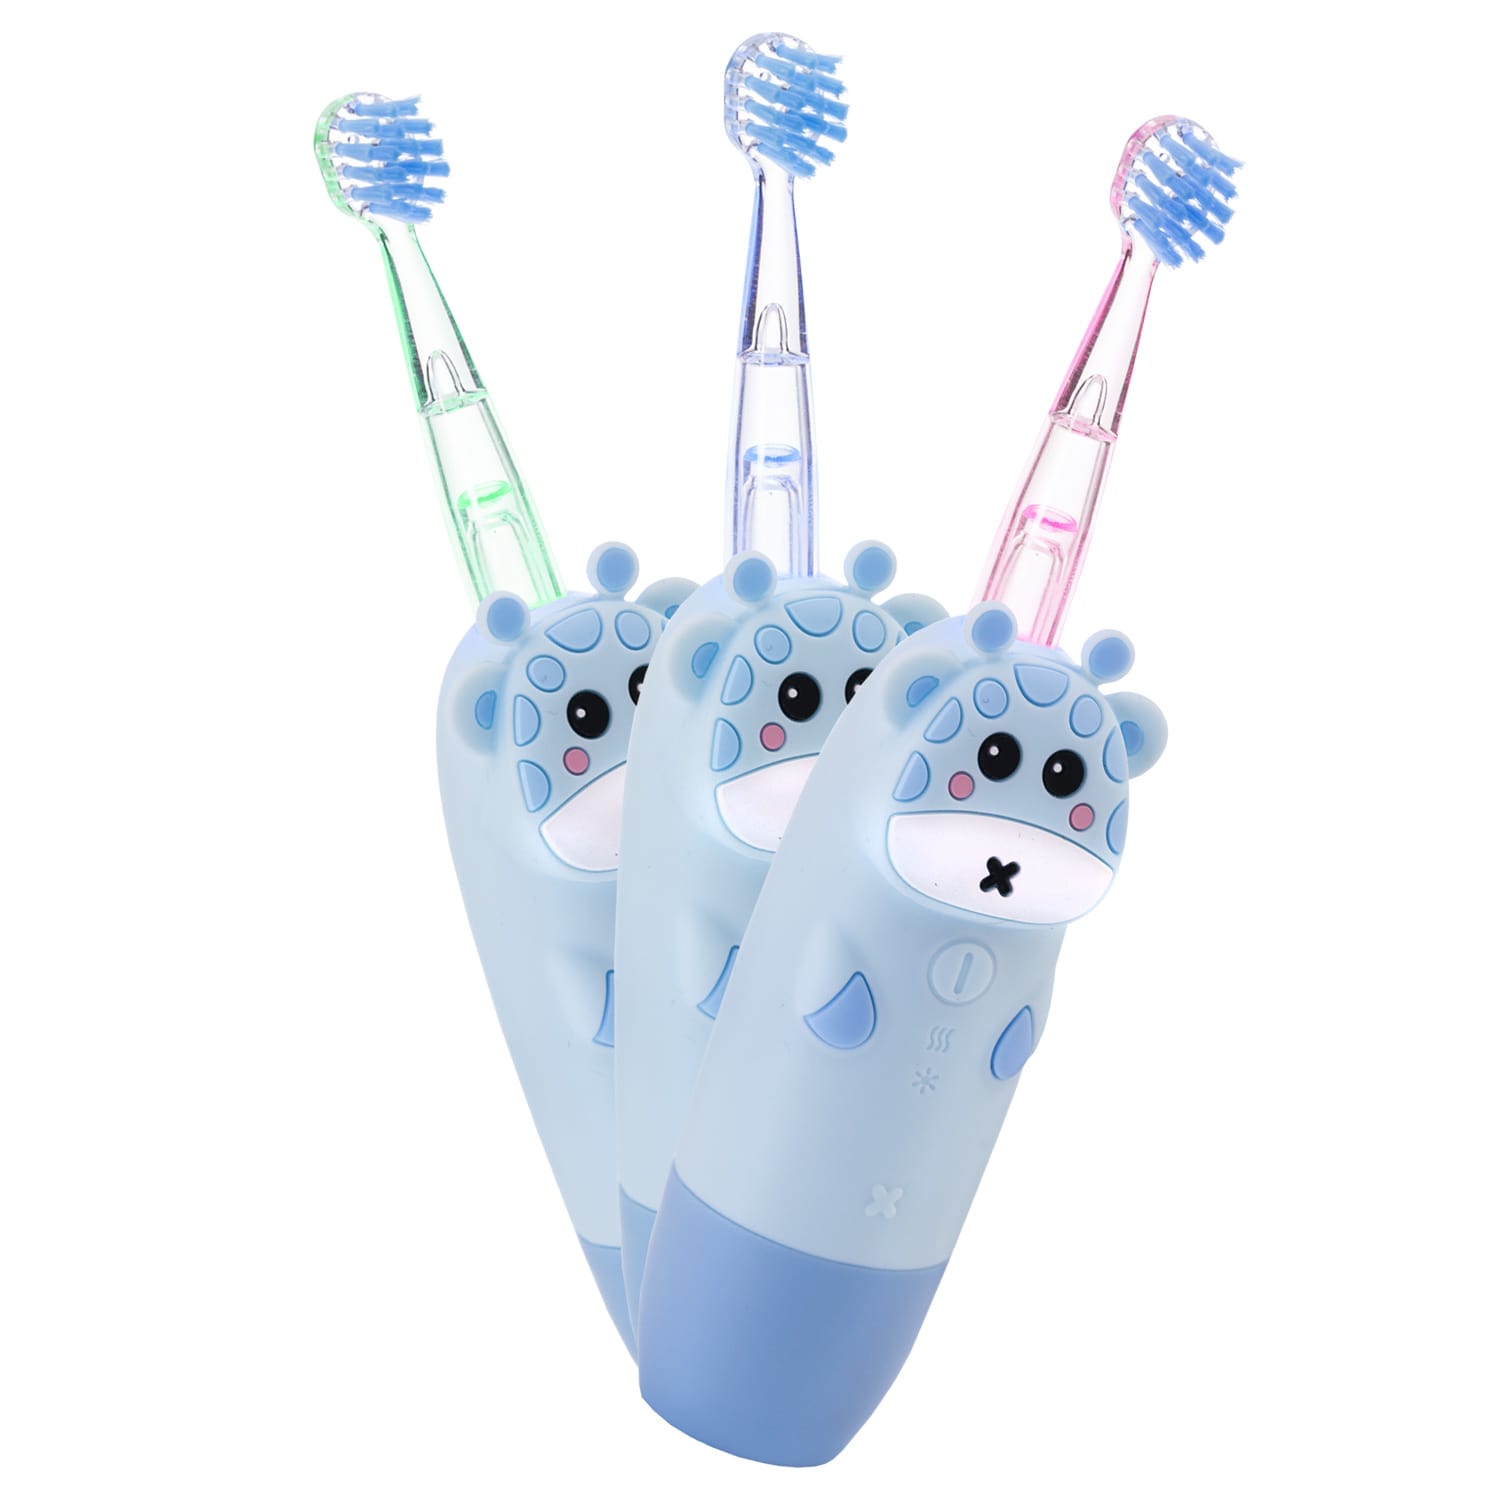 REVYLINE Детская электрическая звуковая зубная щетка RL 025 Baby 1+, голубая, 1 шт (REVYLINE, Электрические зубные щетки) цена и фото